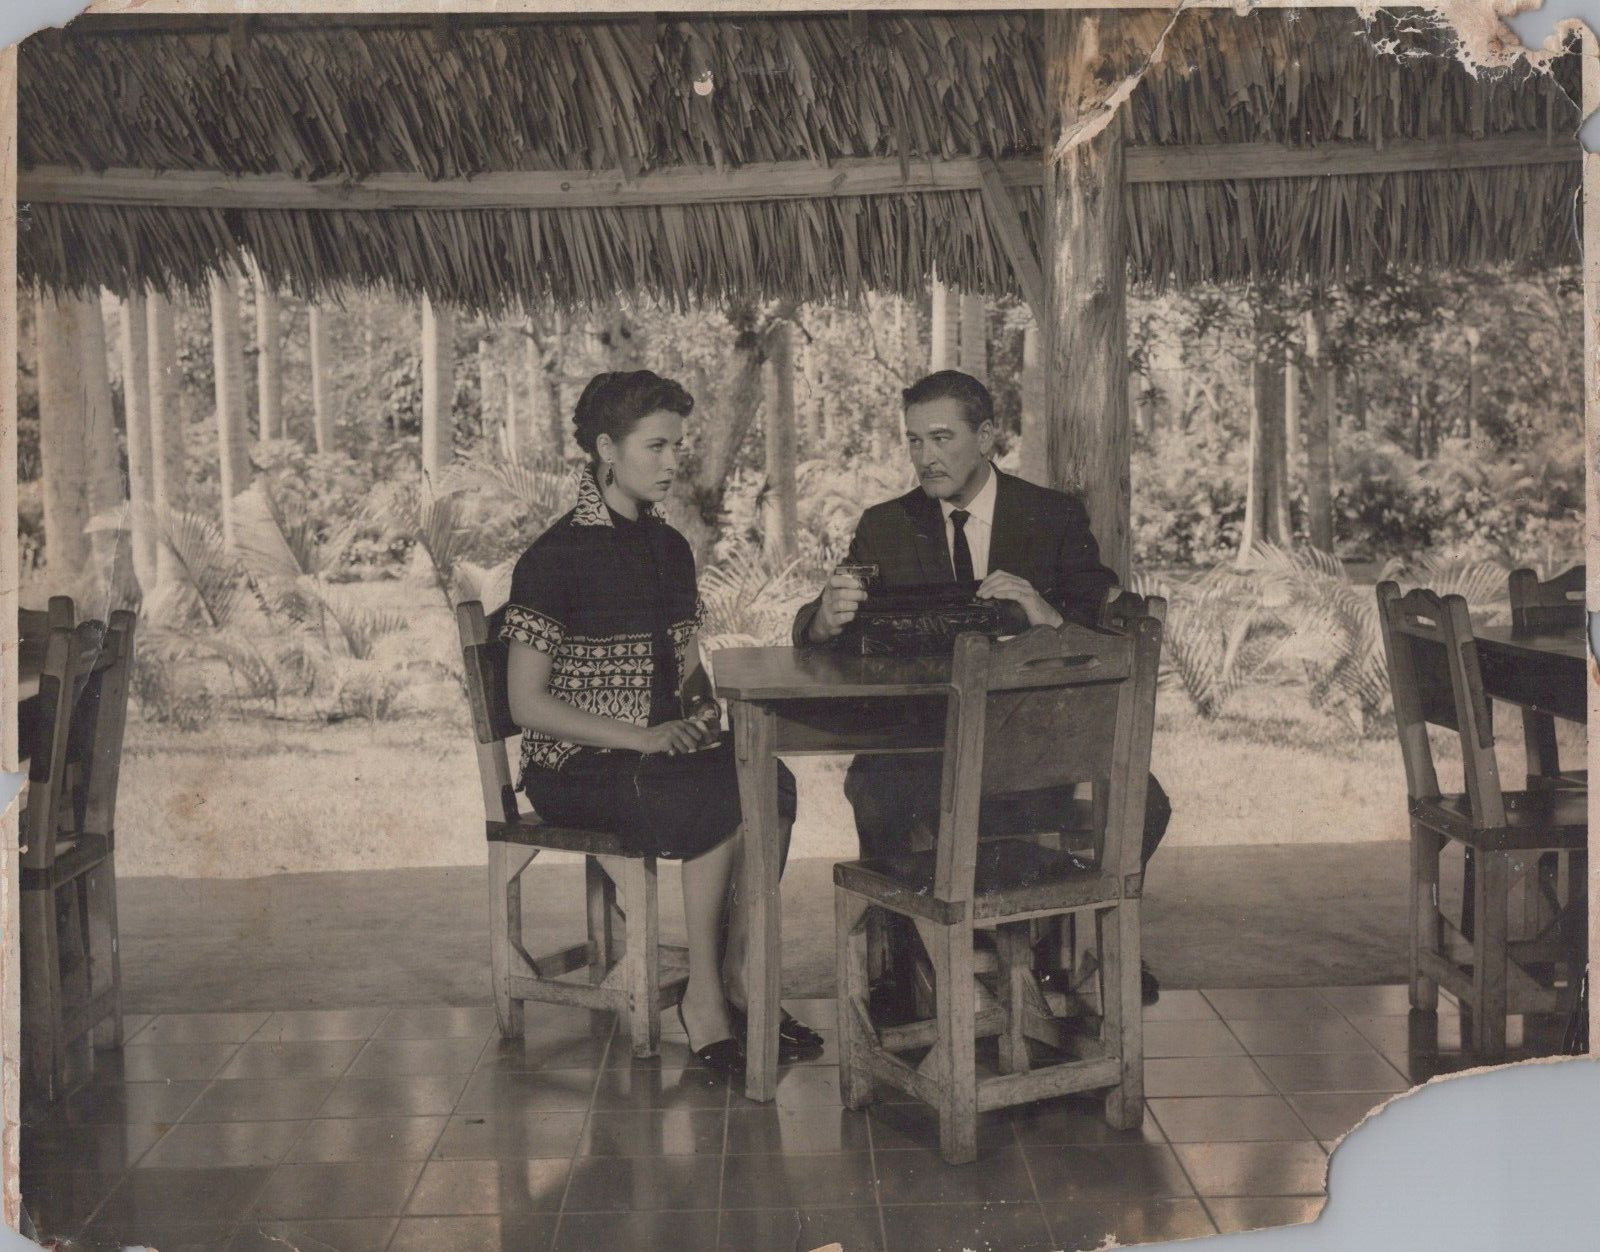 HOLLYWOOD ACTOR ERROL FLYNN & WIFE IN CUBA PORTRAIT 1950s N ESTAPE Photo 200